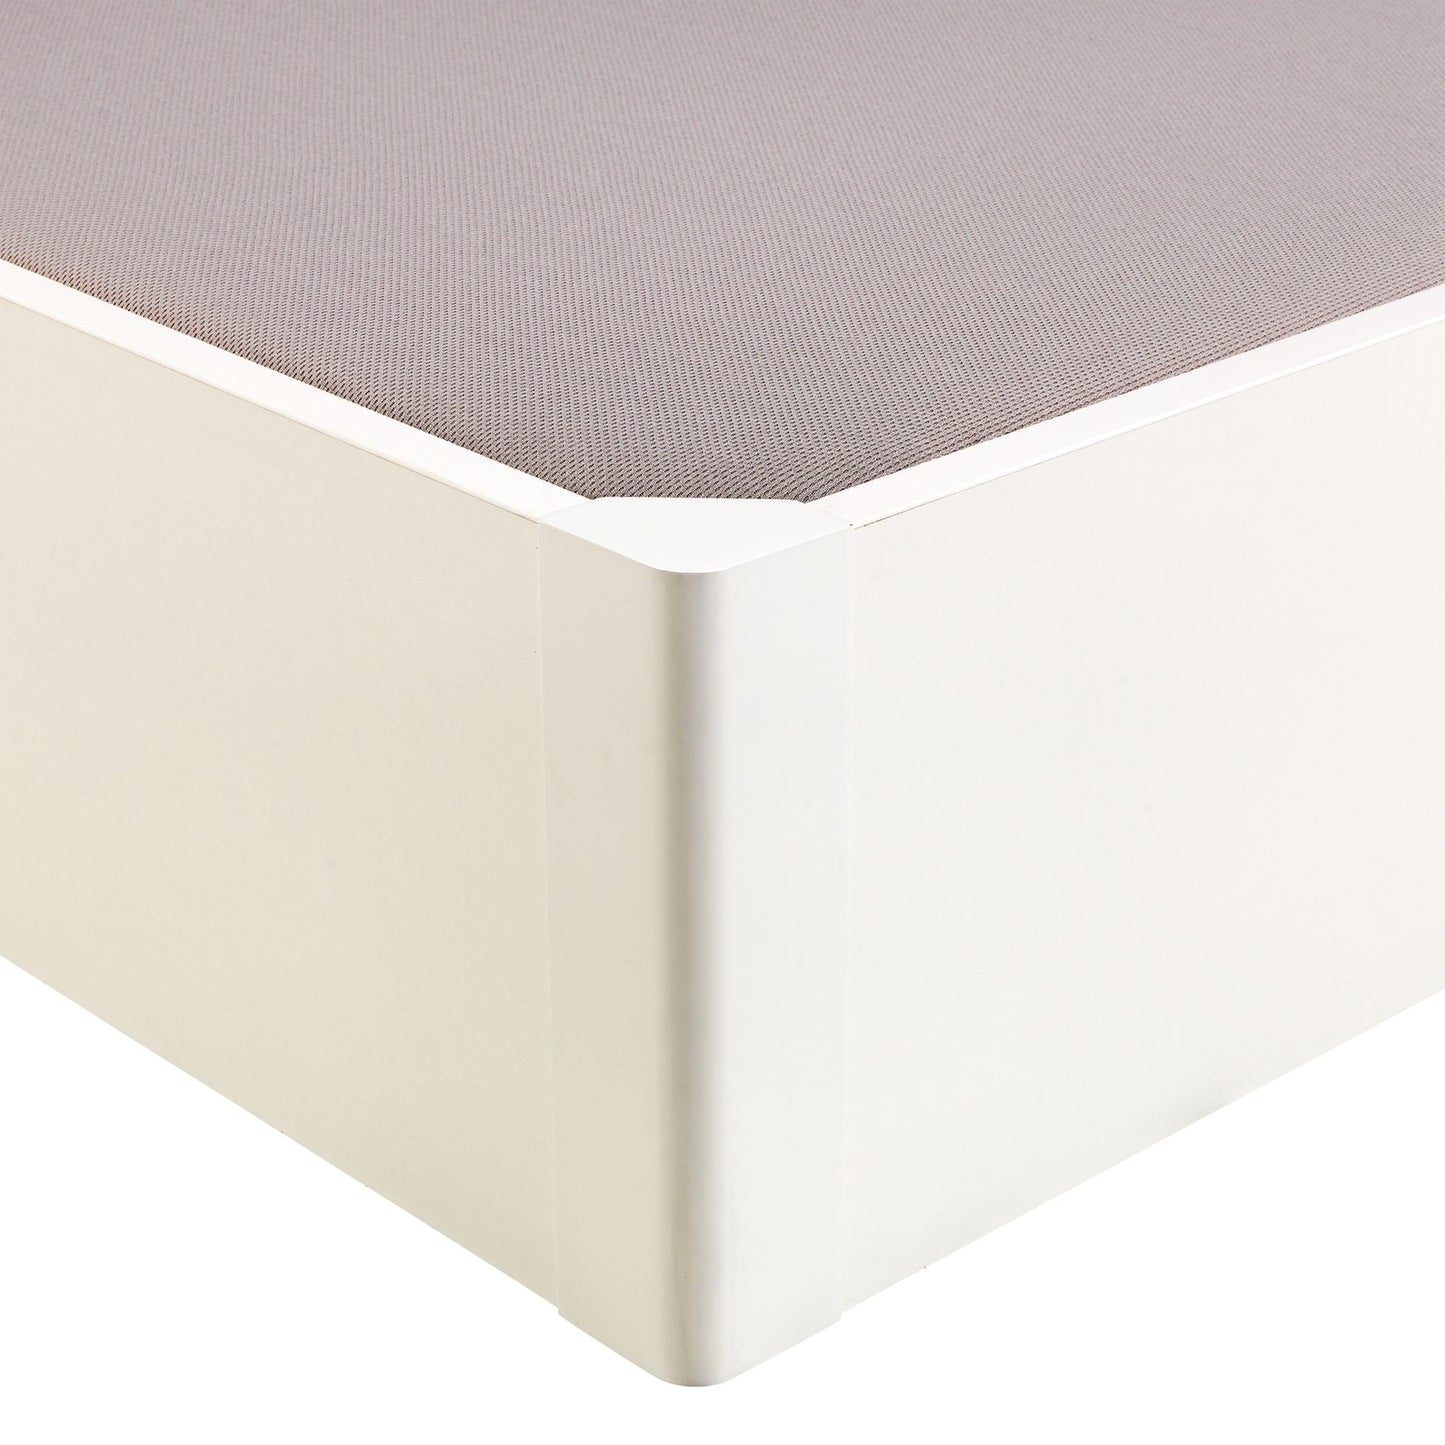 Canapé abatible de madera tapa única de color blanco - DESIGN - 105x200